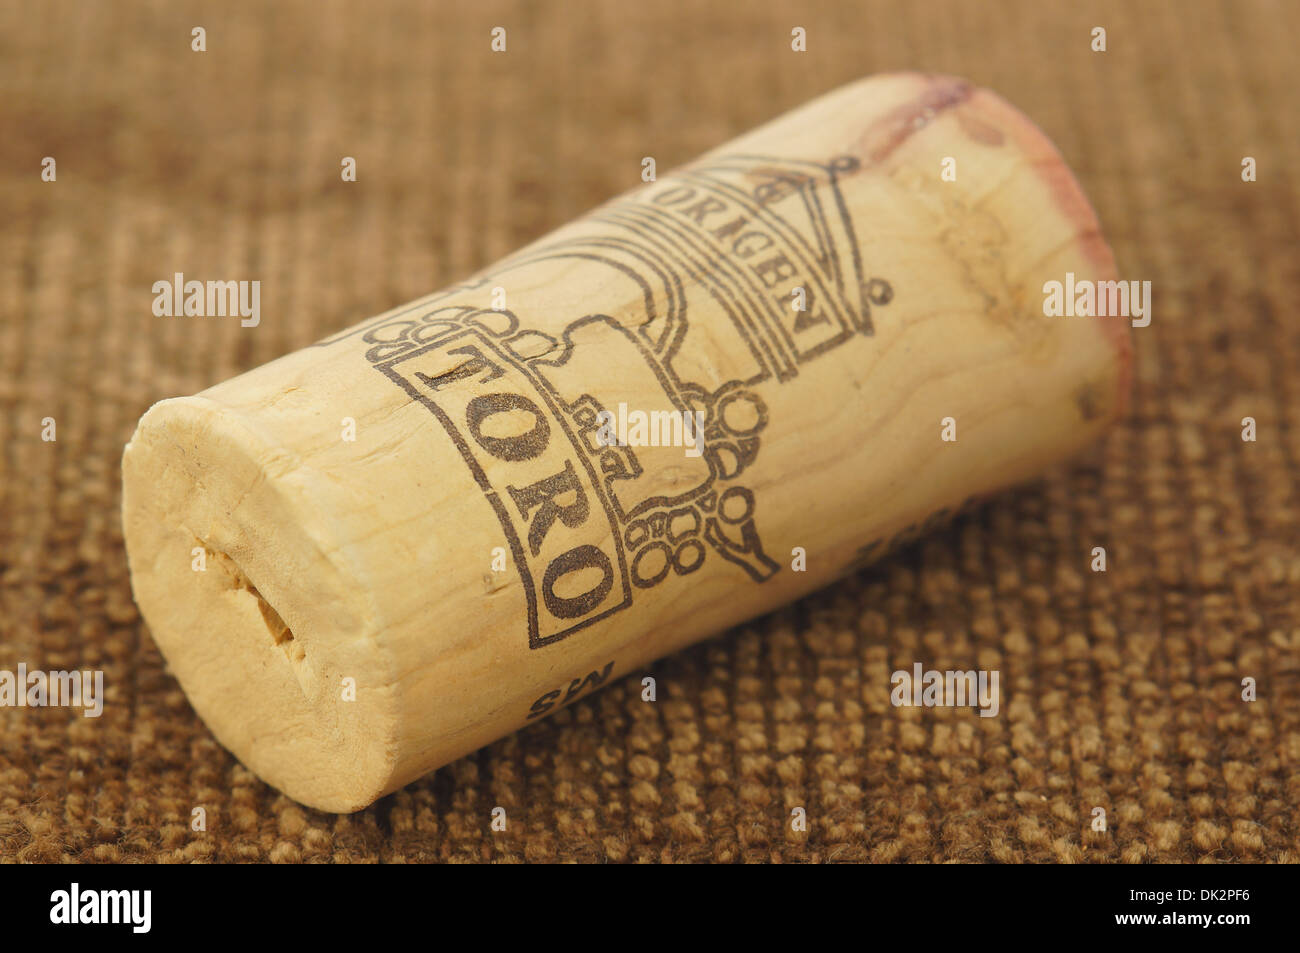 Toro spanish wine cork stopper Stock Photo